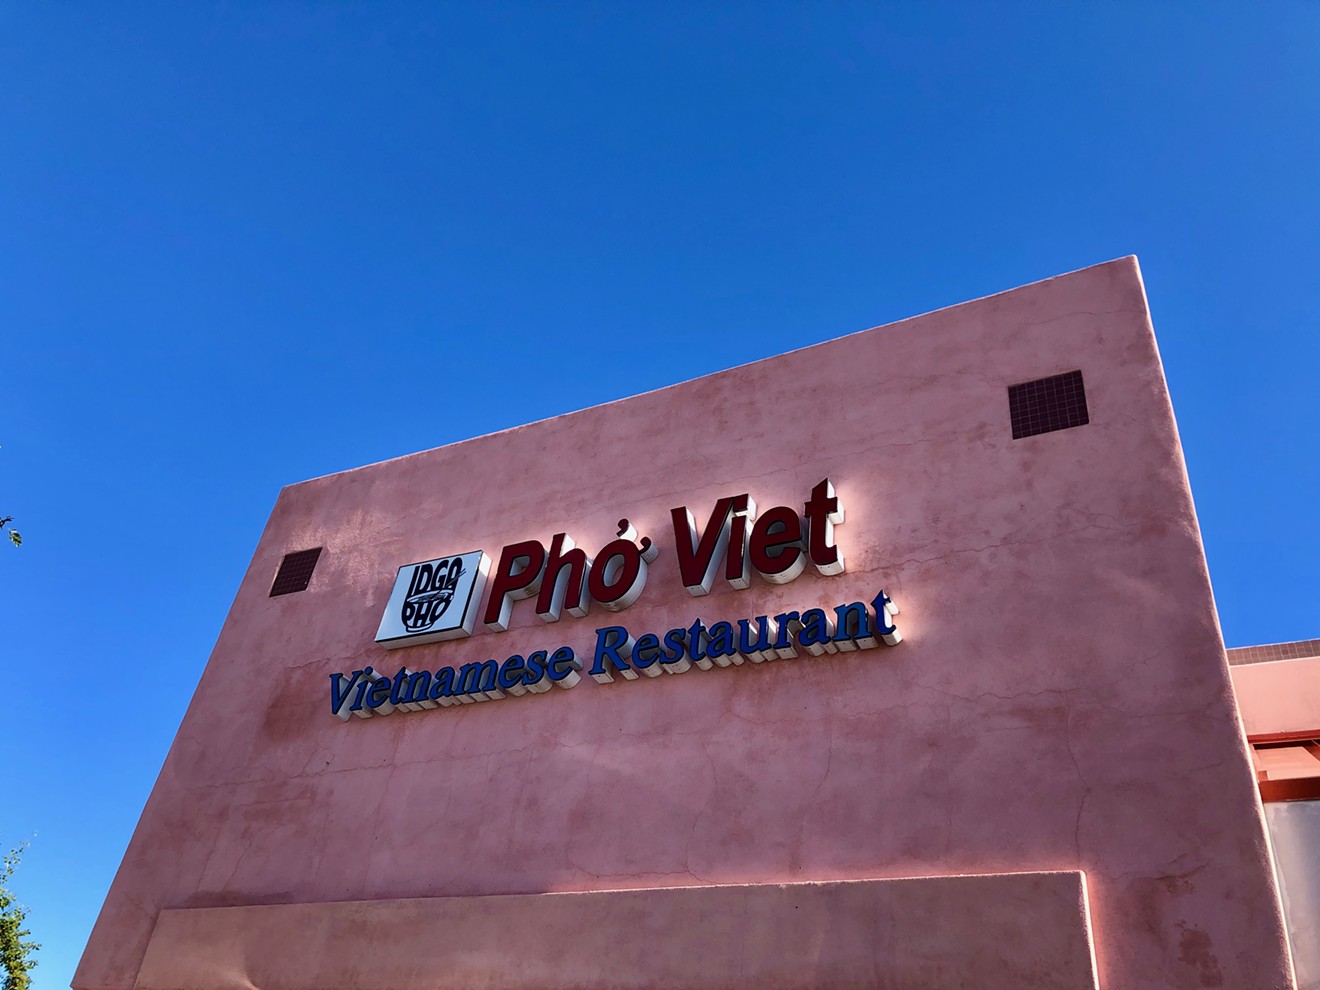 Don't miss Pho Viet Vietnamese Restaurant in the northwest Valley.